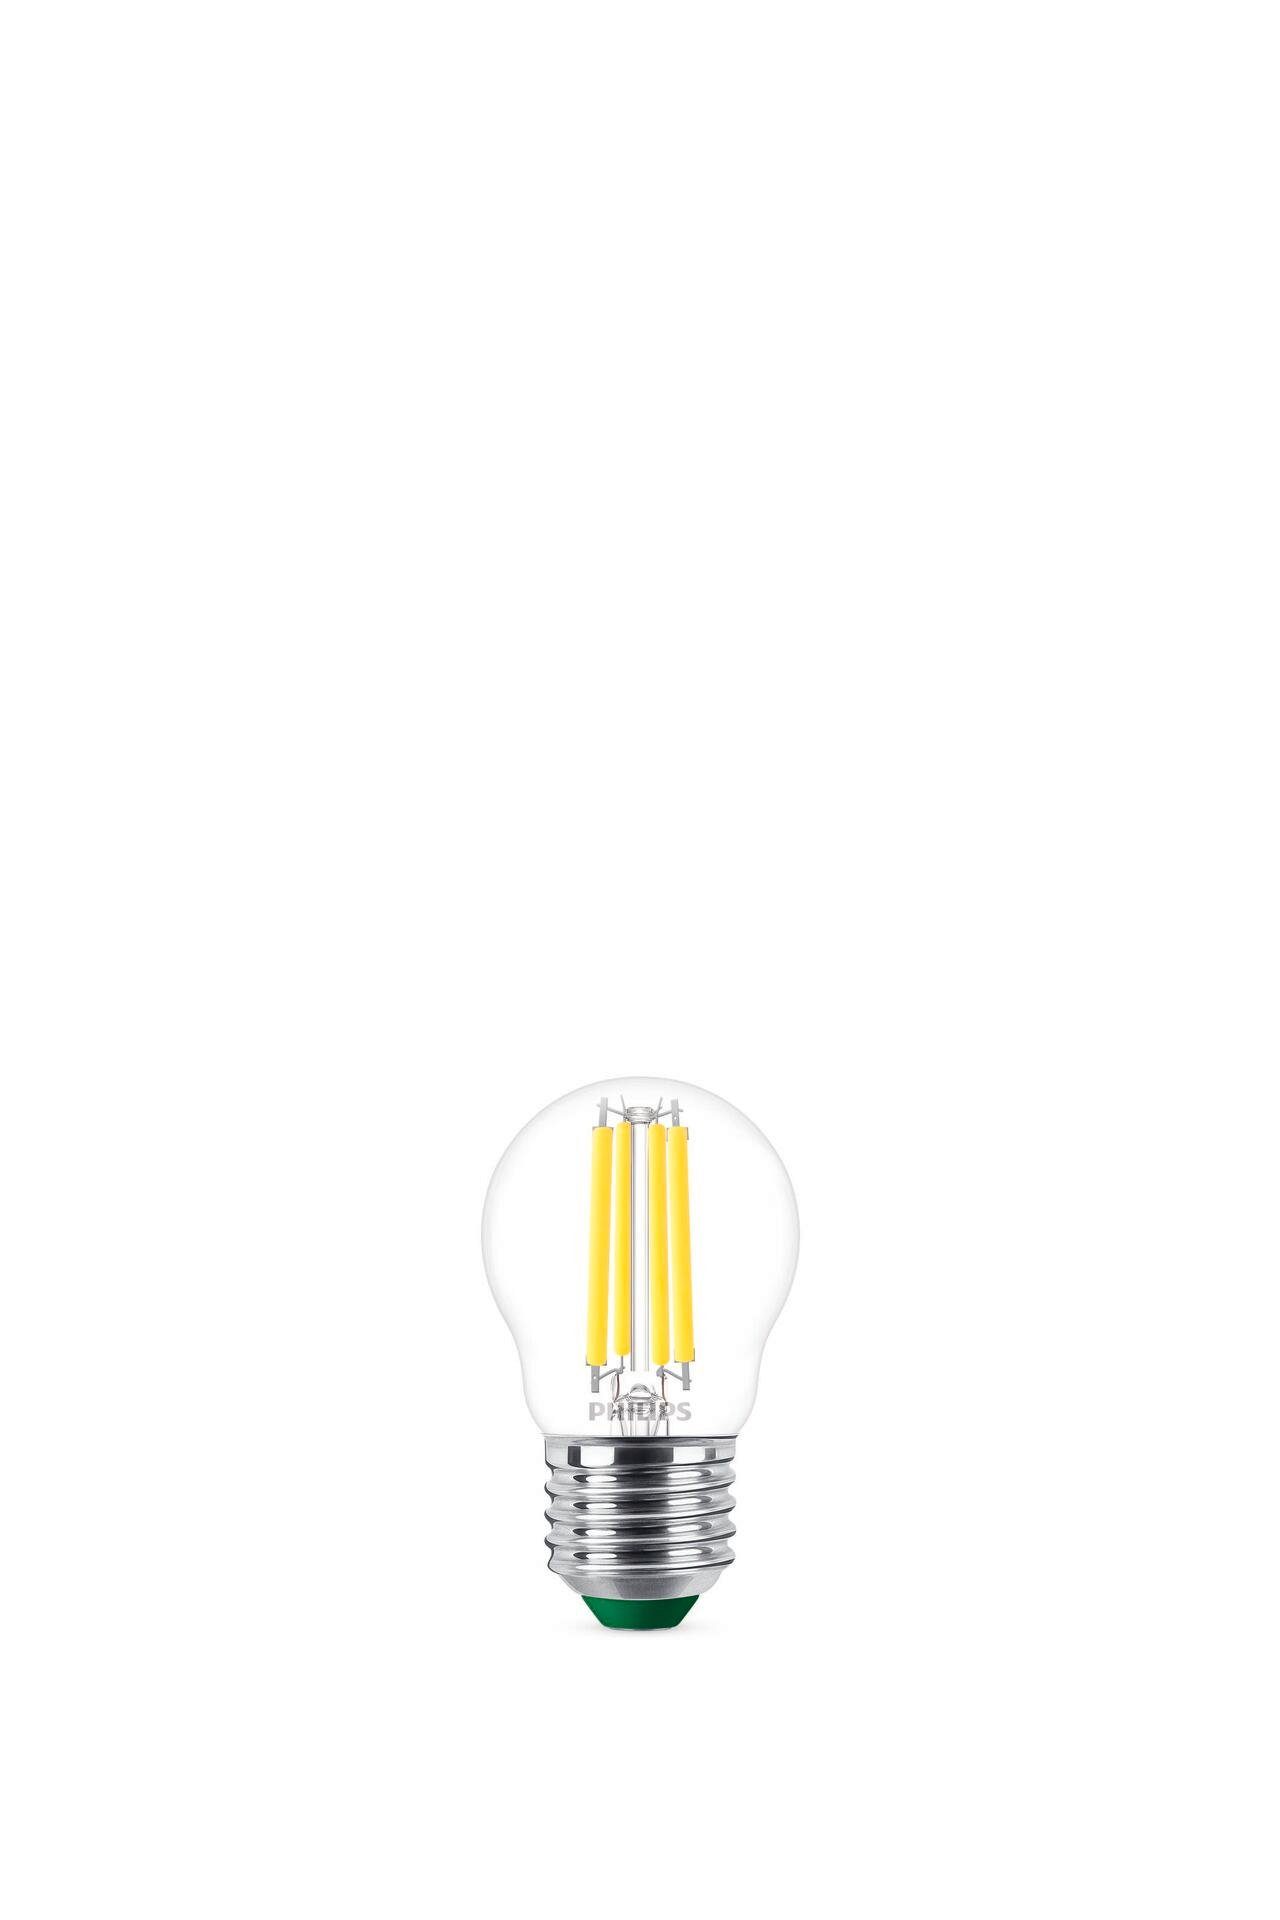 LED-Lampe, Philips LED-Leuchte integriert LED fest Smarte